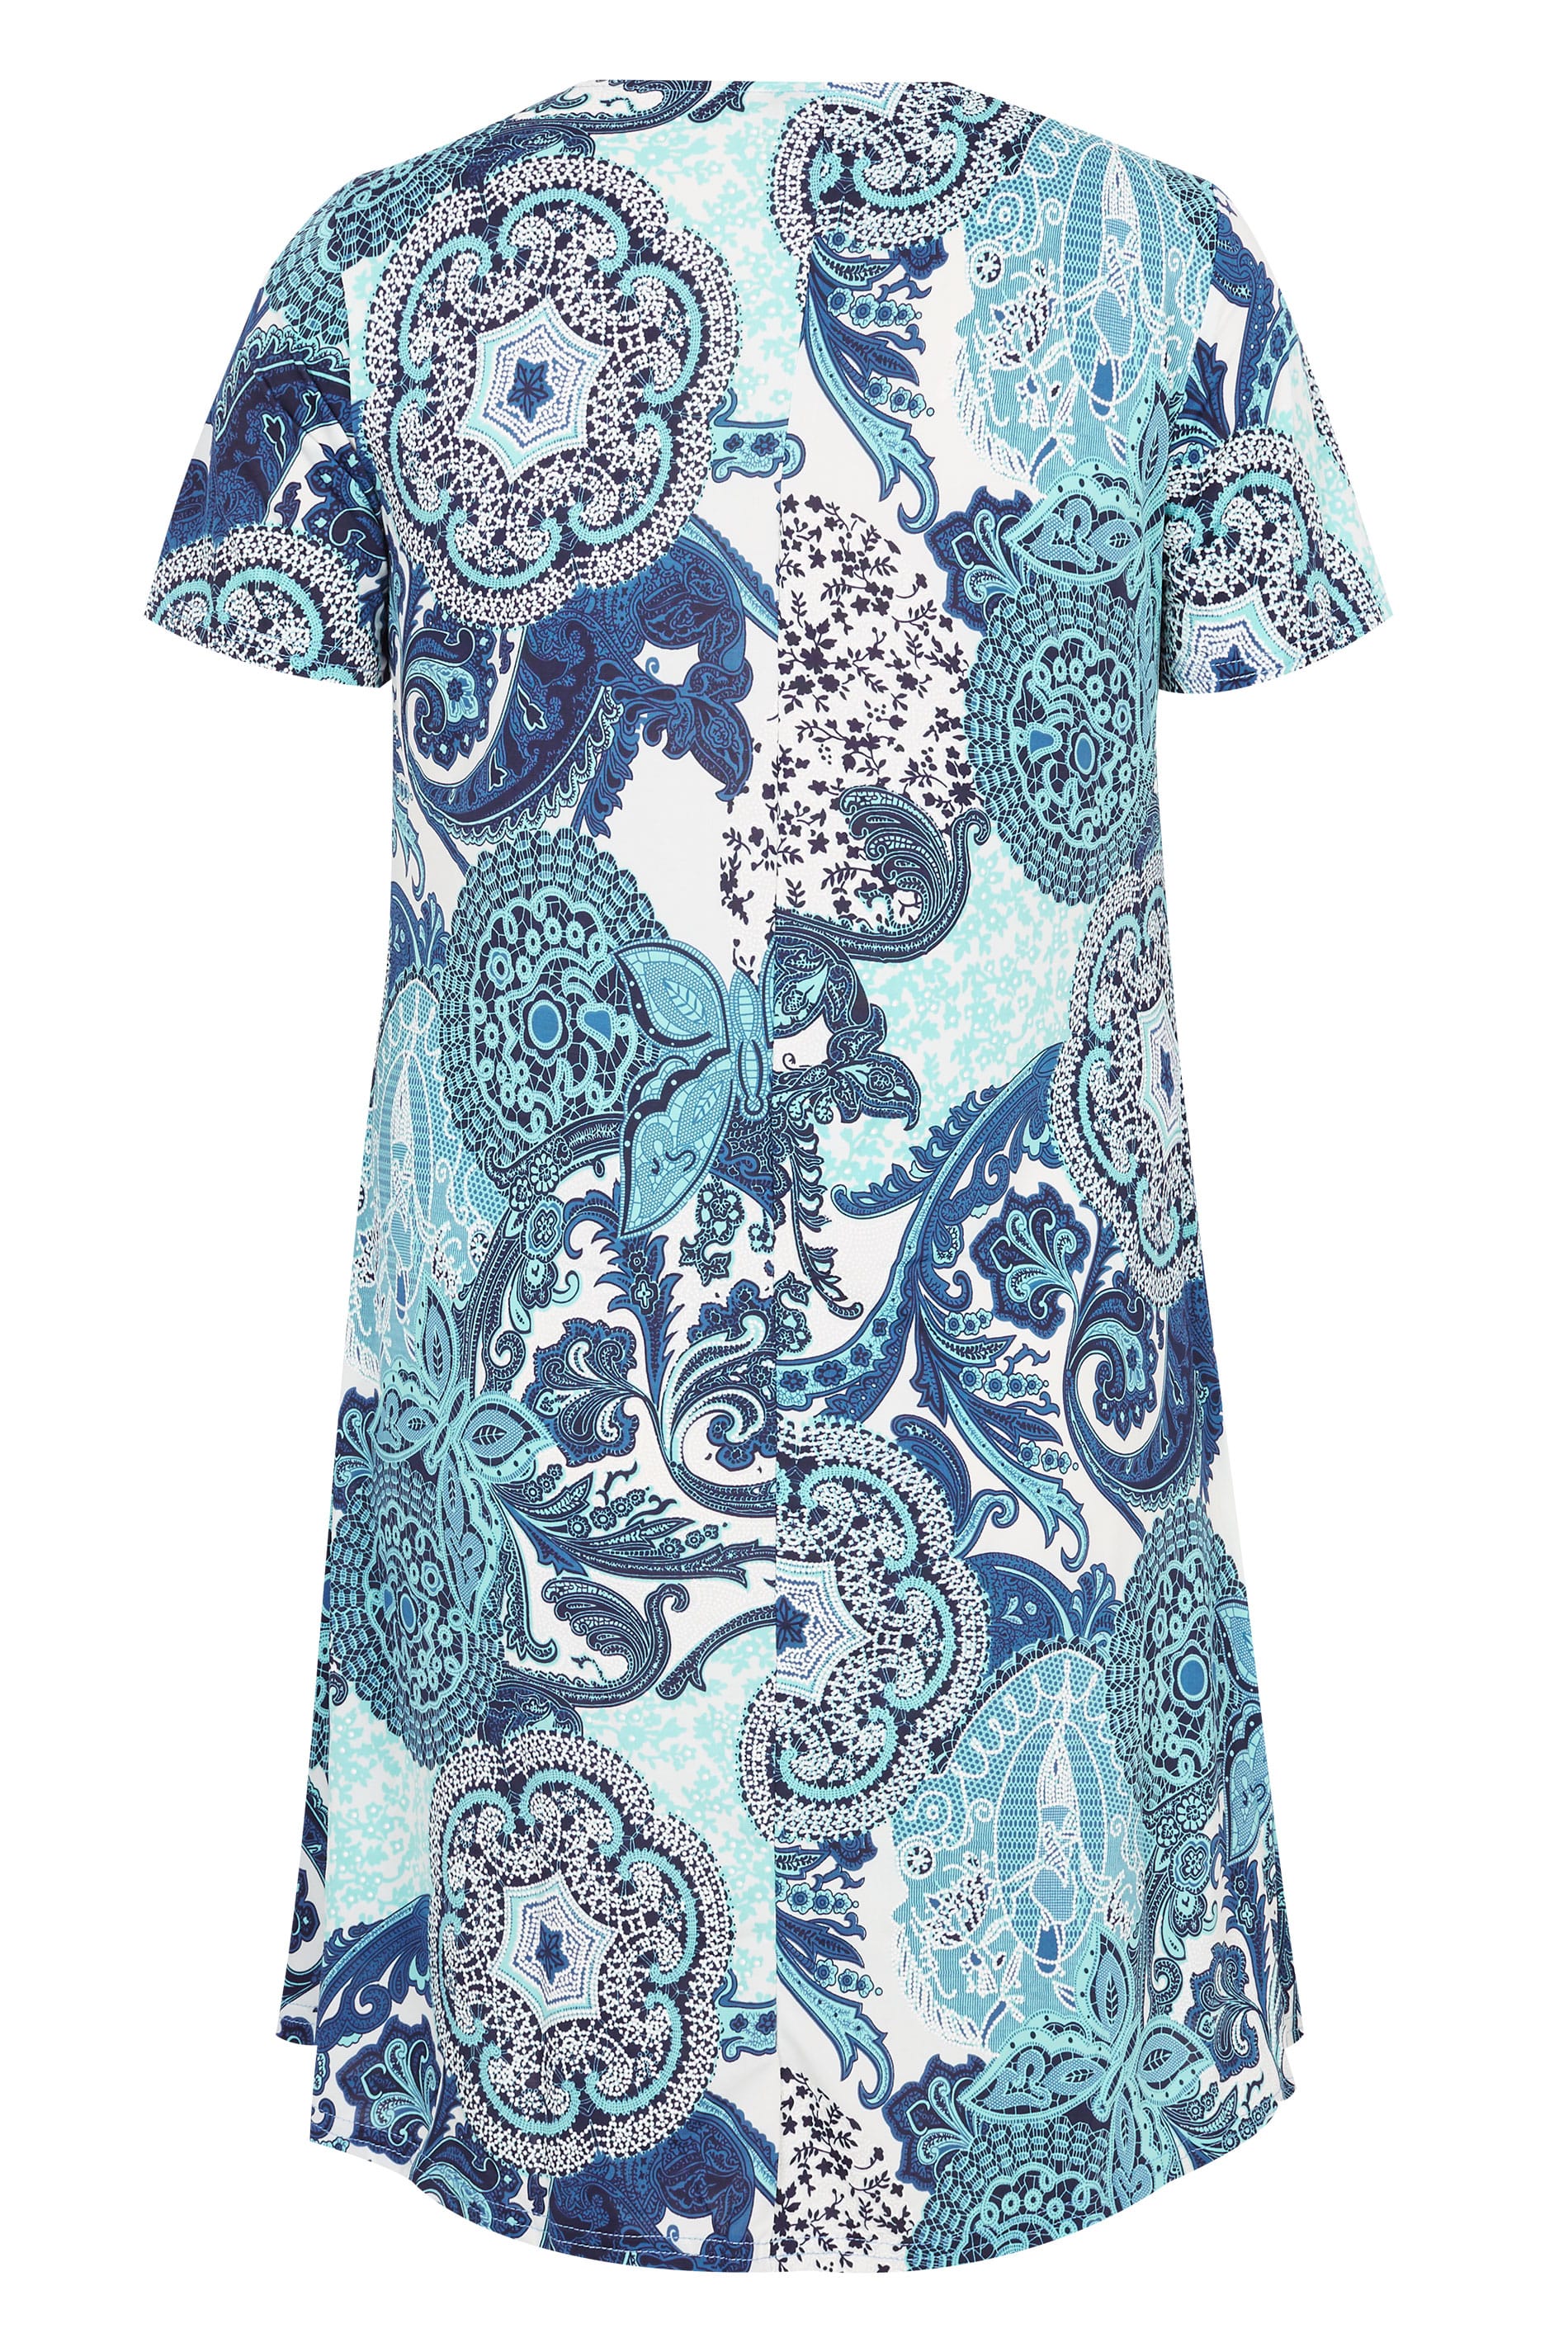 Plus Size IZABEL CURVE Blue Paisley Dress | Sizes 16 to 26 | Yours Clothing